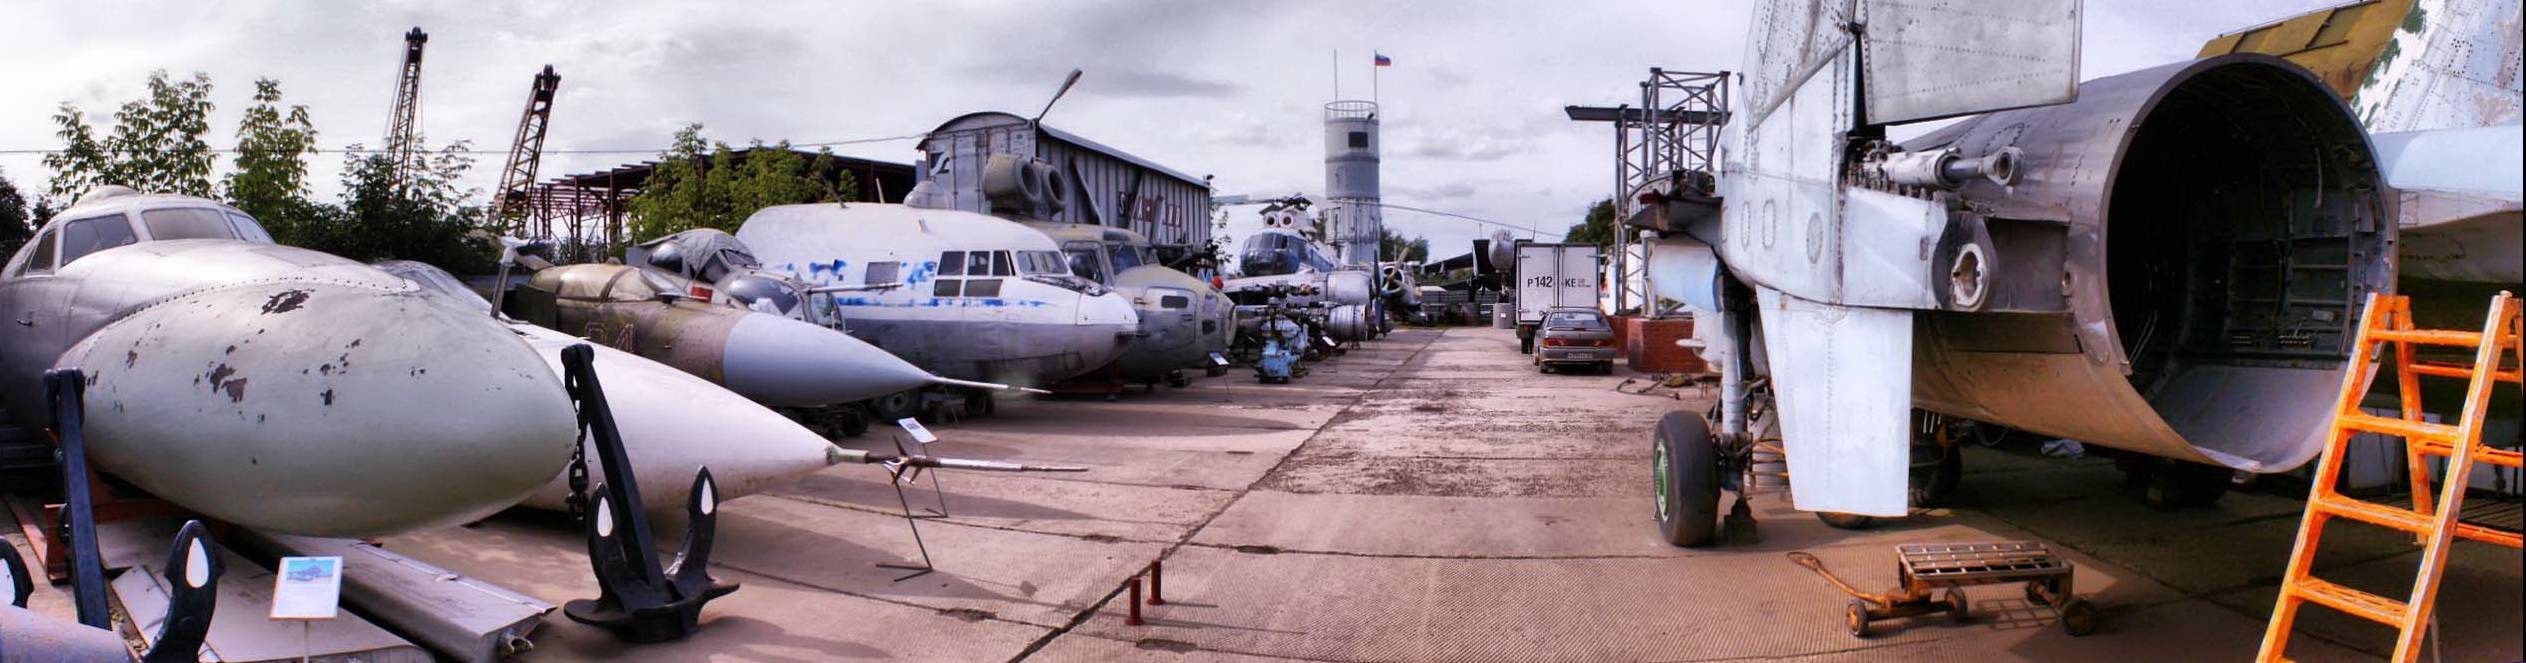 Пермский музей авиации — представить себя пилотом самолёта